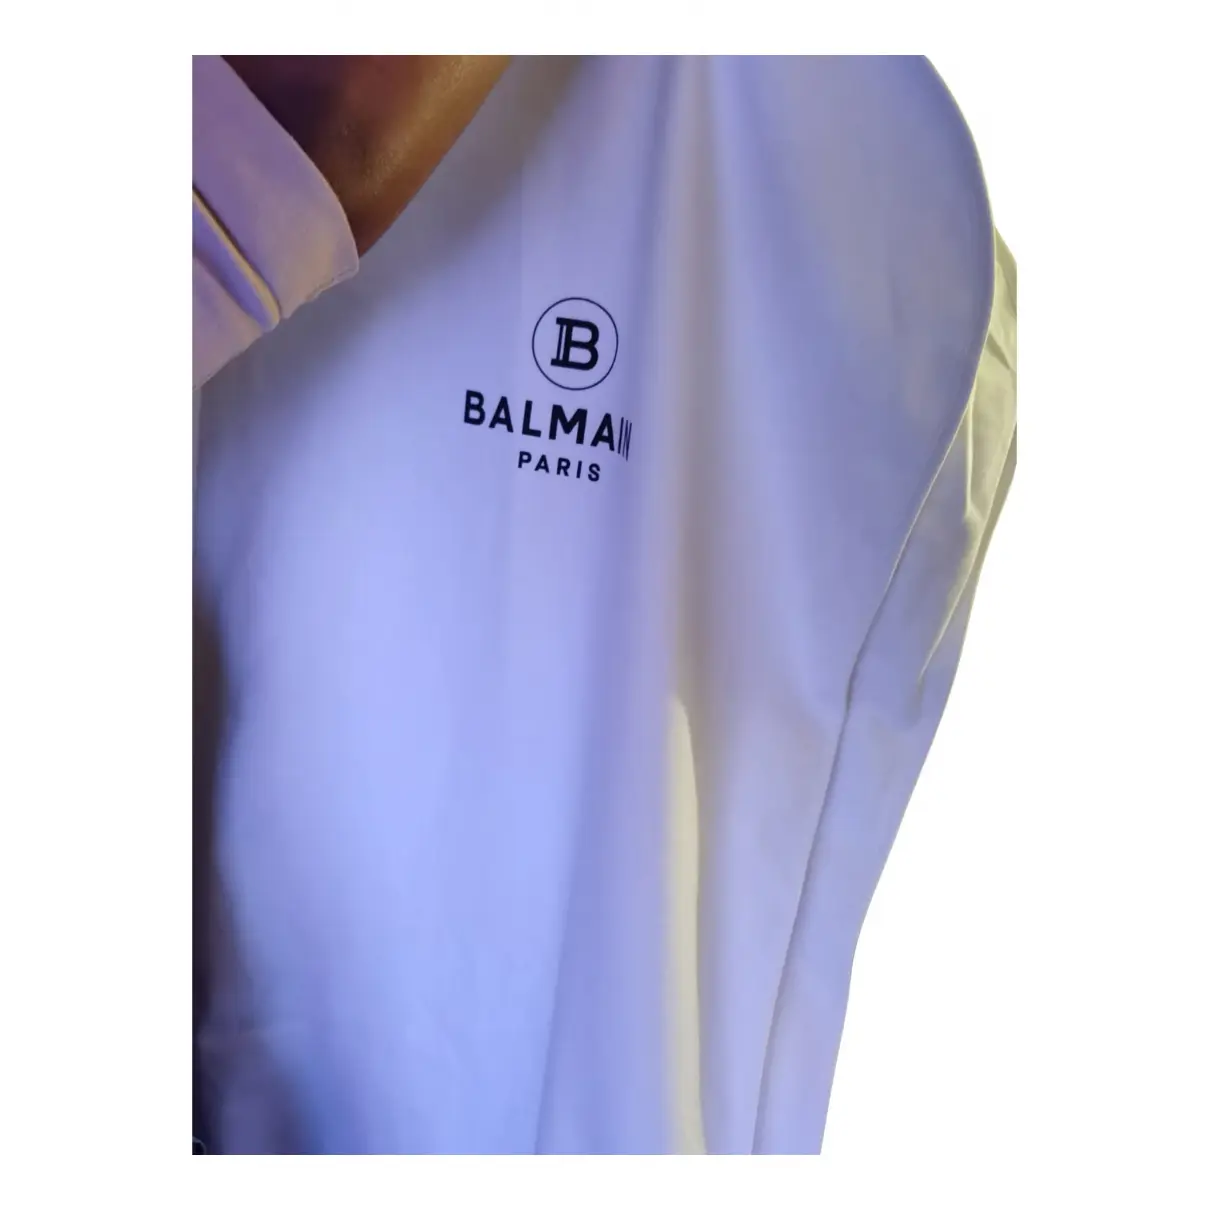 Buy Balmain Travel bag online